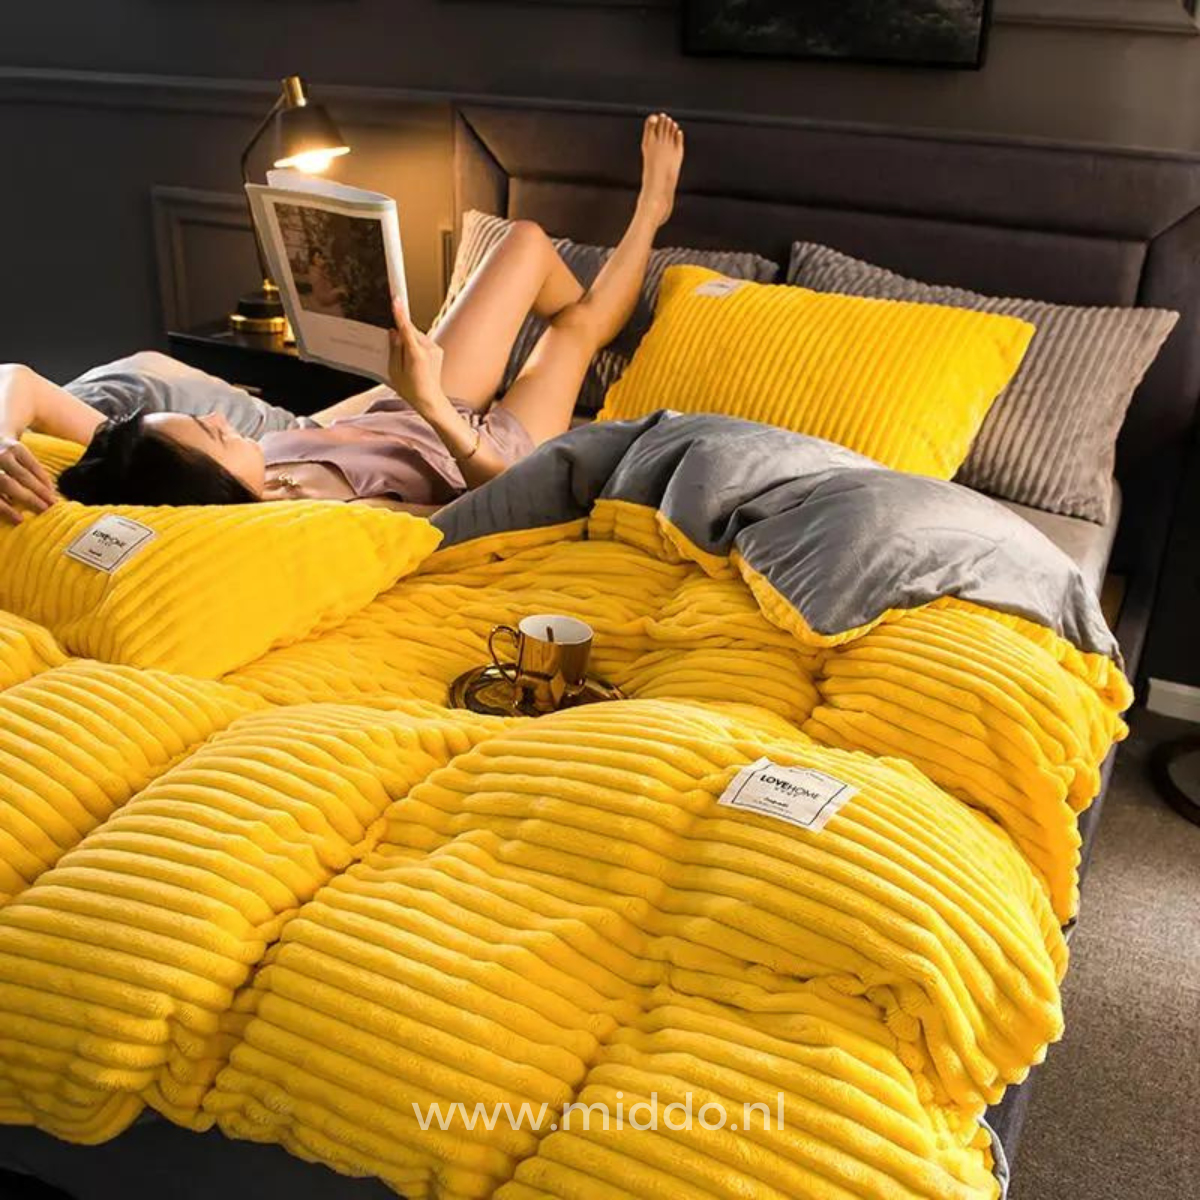 Vrouw ligt op bed met tijdschrift op geel dekbedovertrek